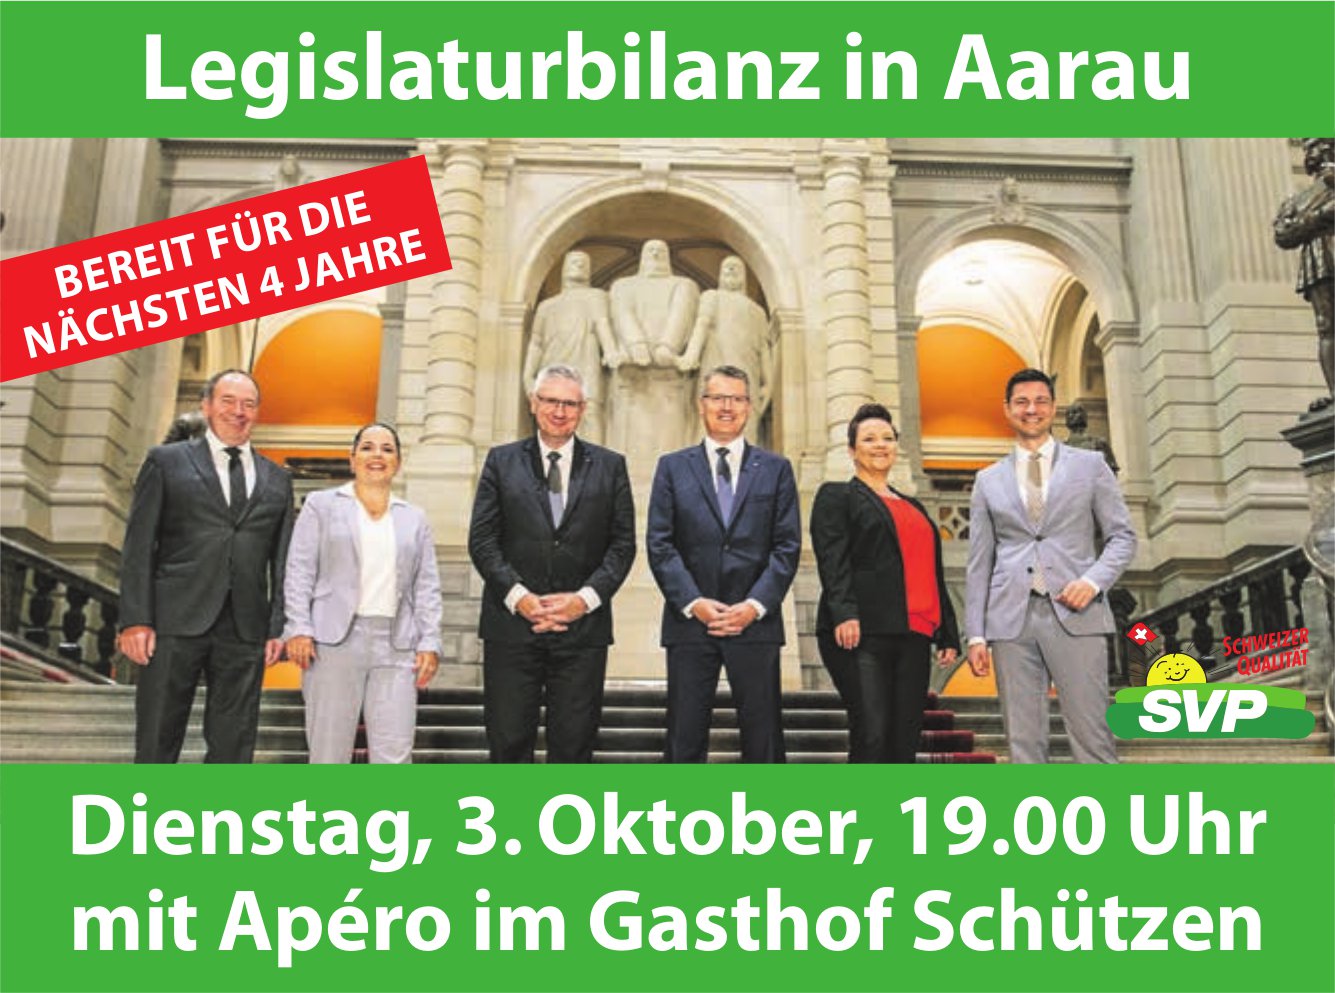 Legislaturbilanz SVP, 3. Oktober, Gasthof Schützen, Aarau